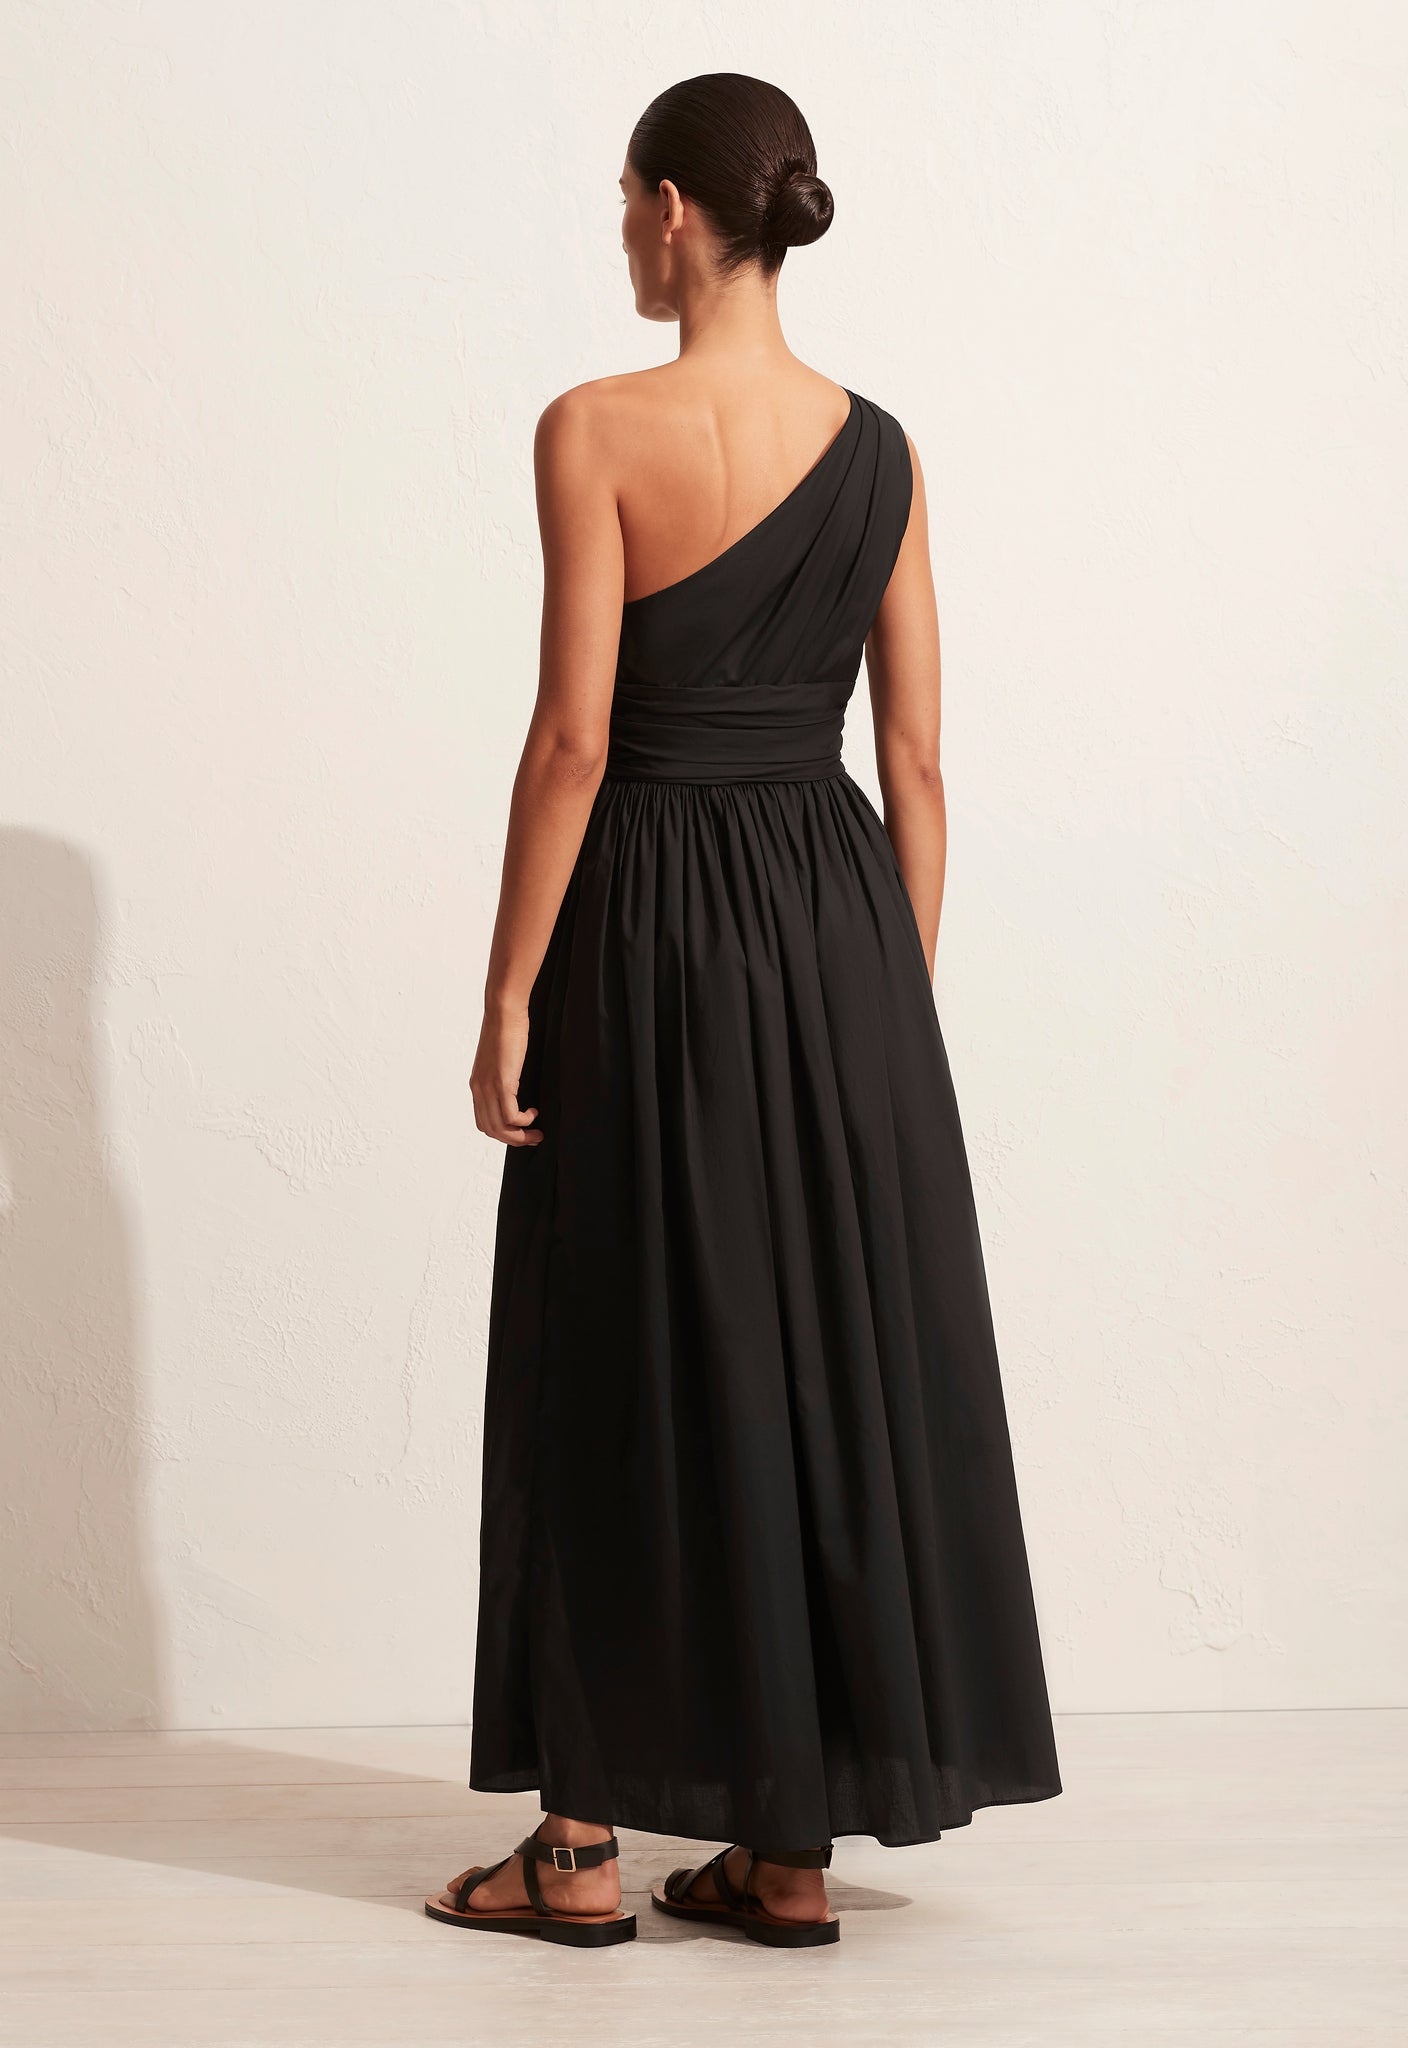 Gathered One Shoulder Dress - Black - Matteau